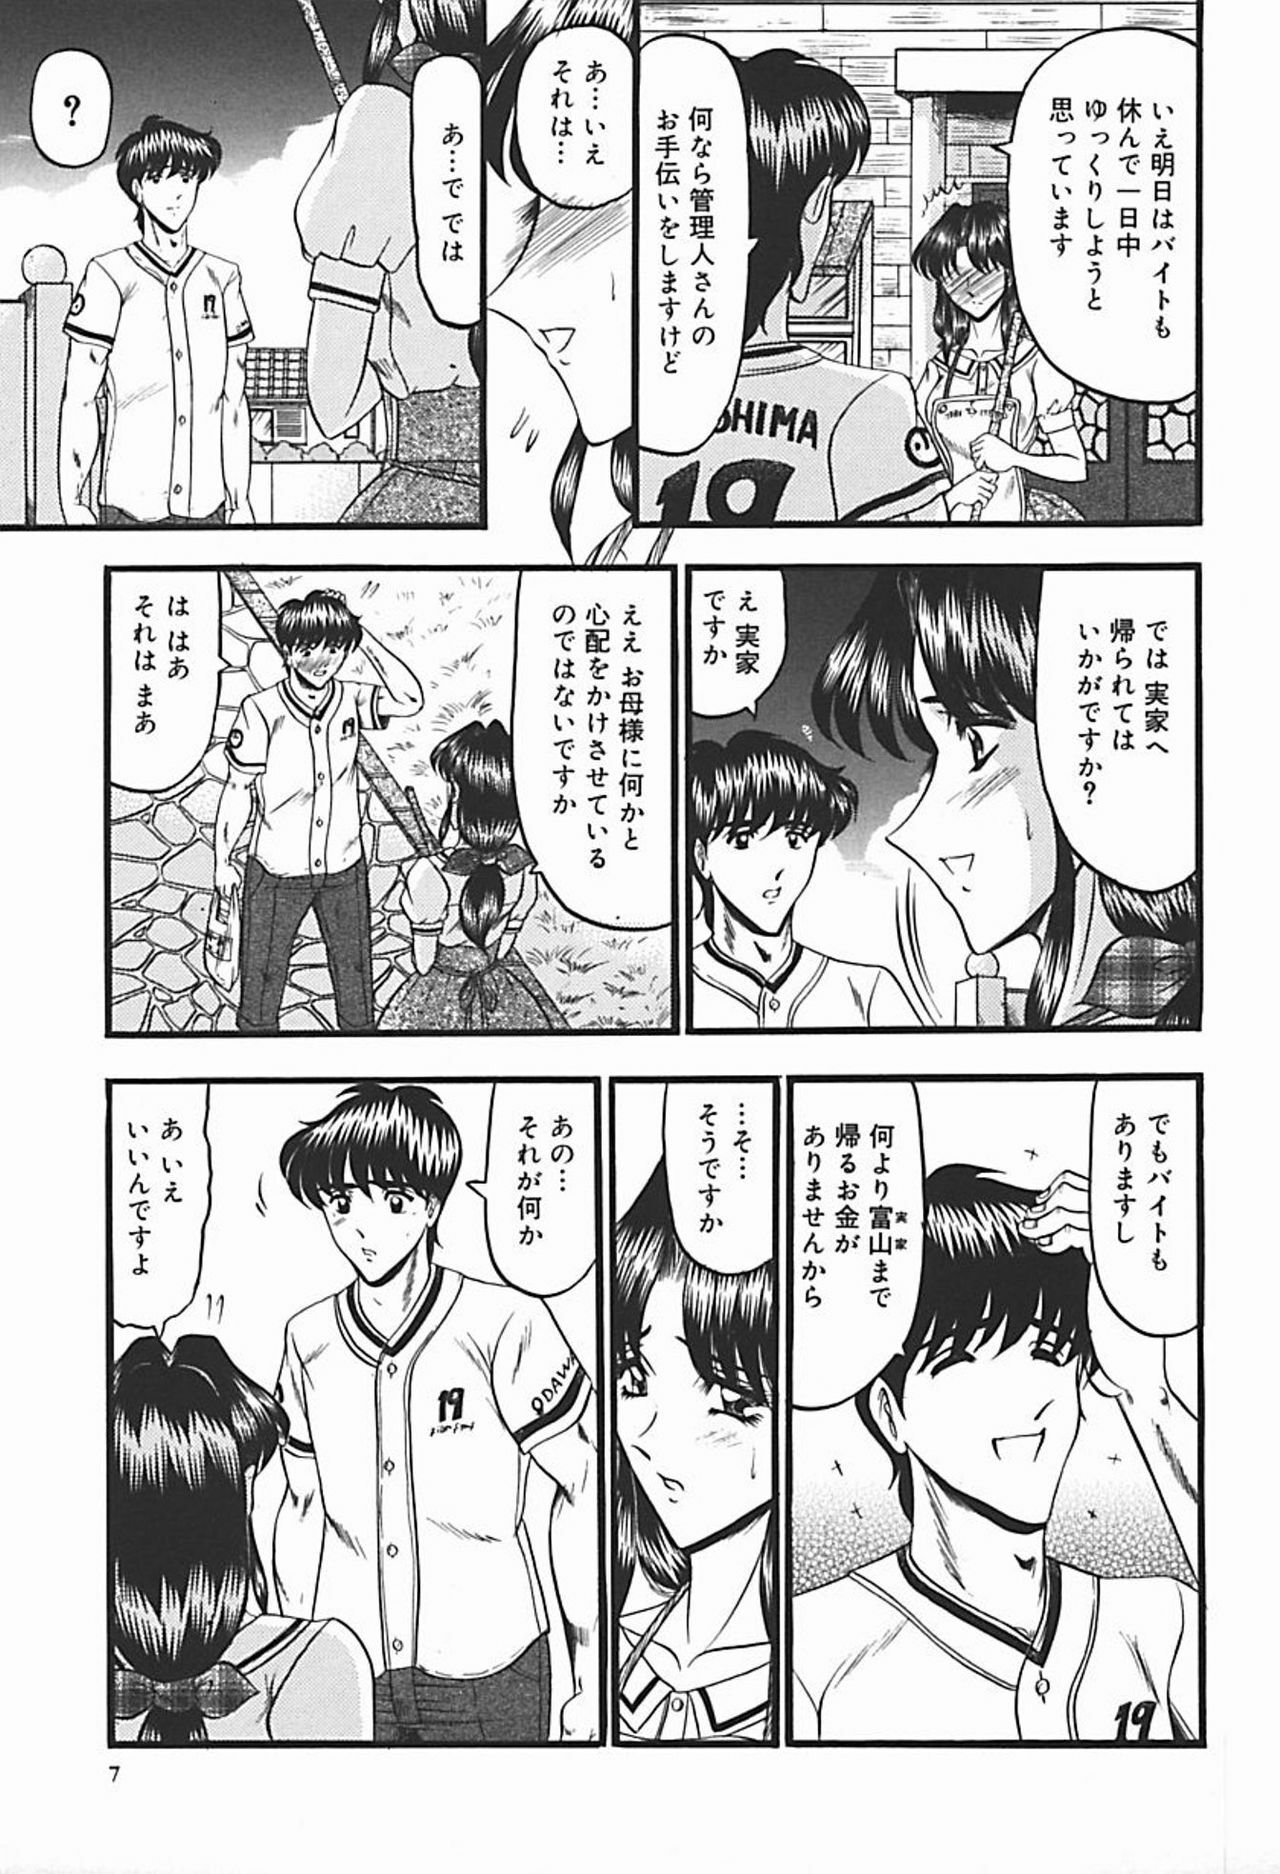 [Komura Saki] Inshuu ~Taenaru Hanabana no Shirabe~ page 12 full